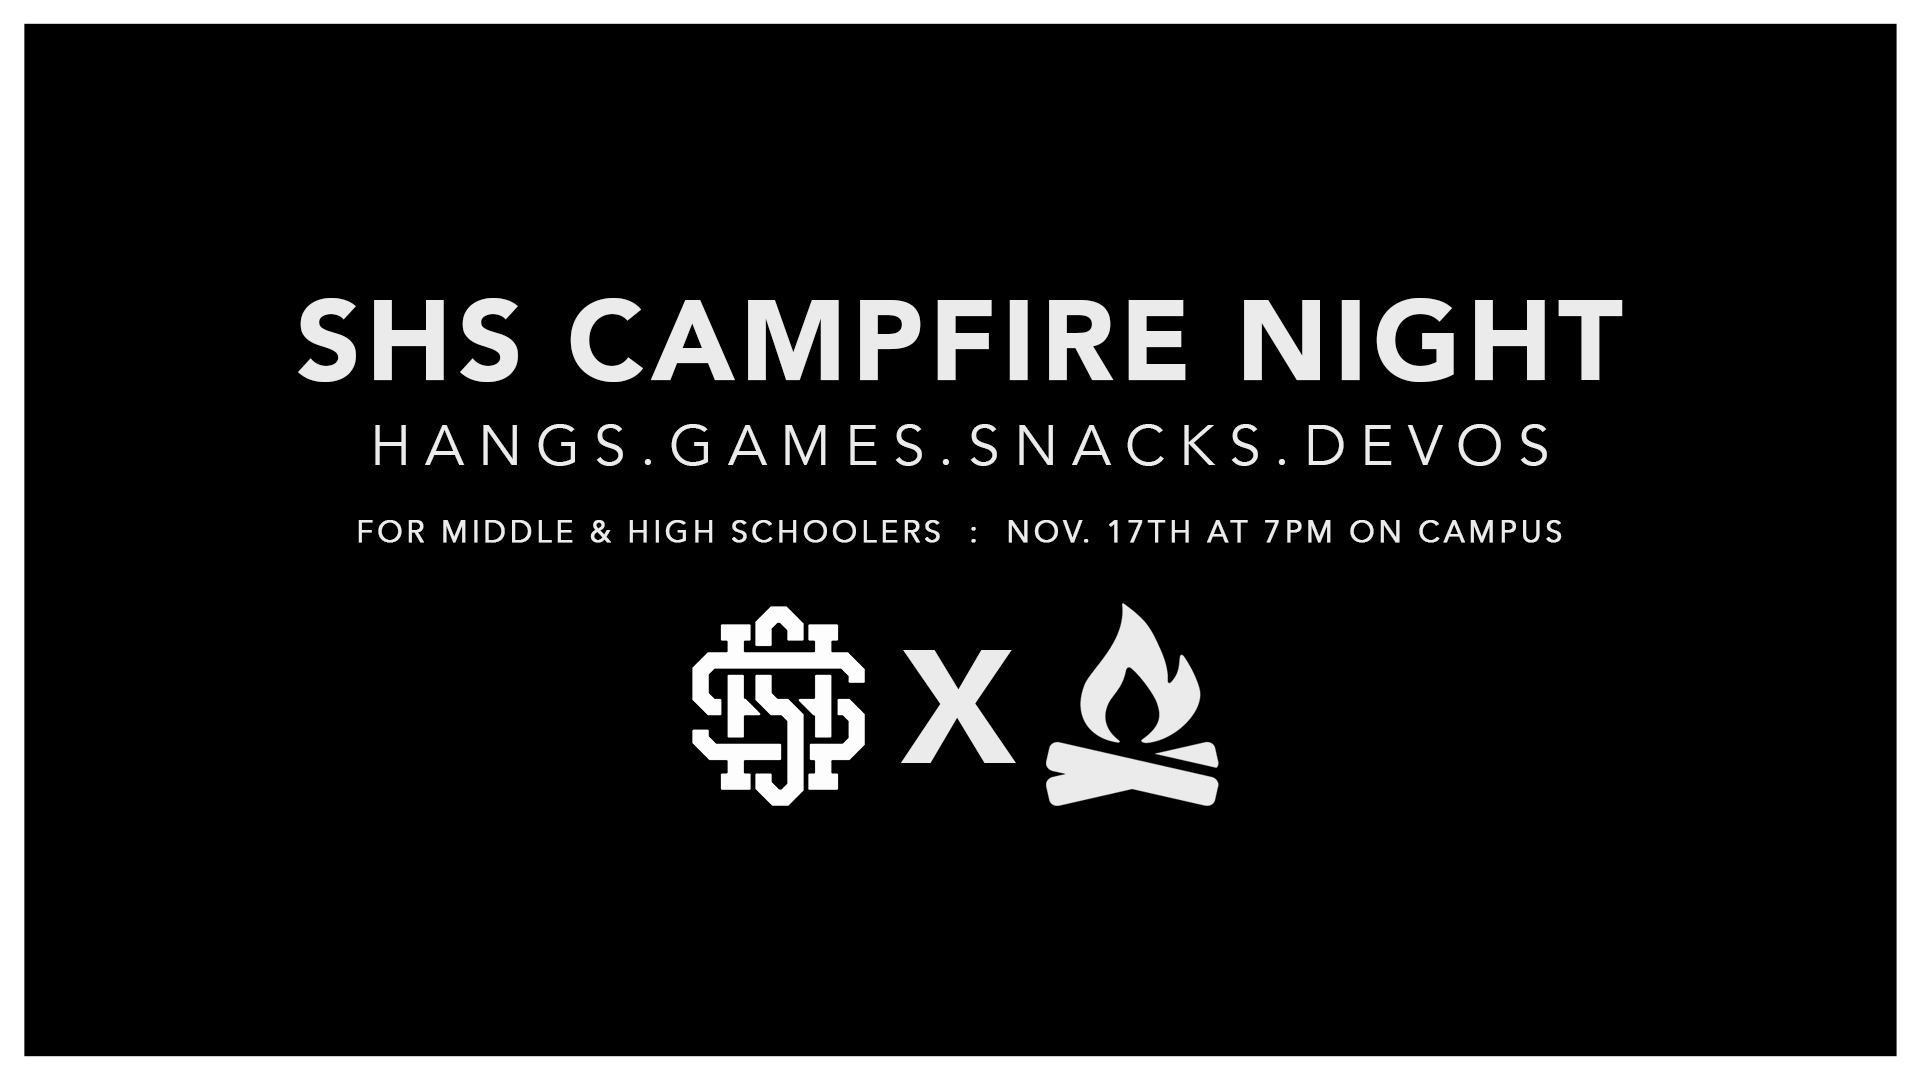 SHS Campfire Night Nov